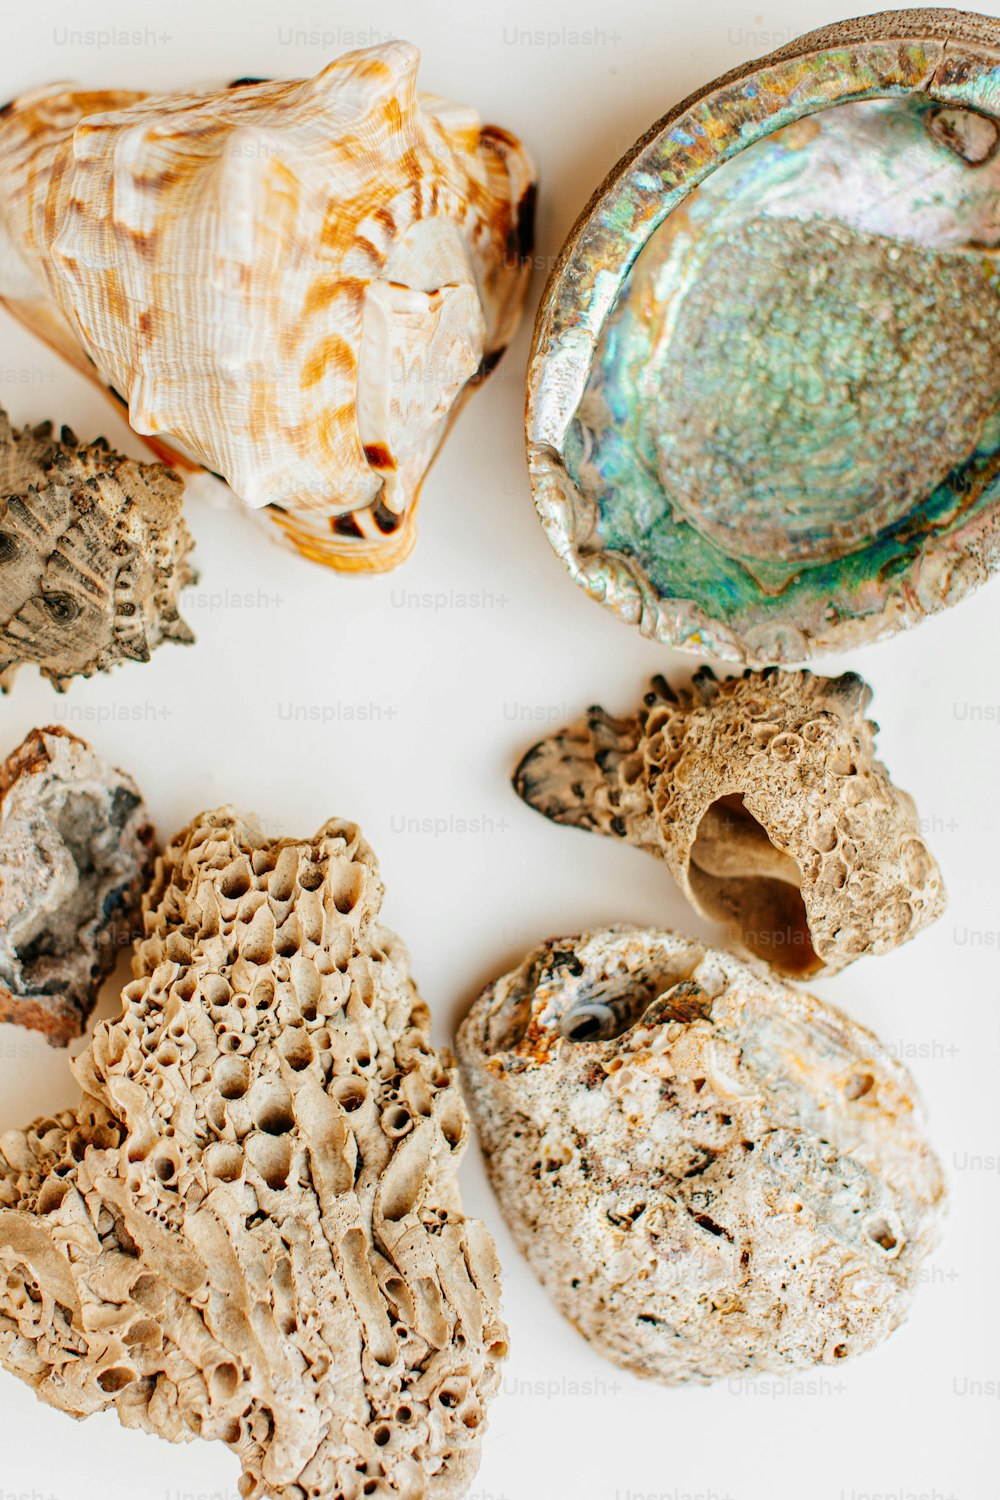 Un grupo de conchas marinas sobre una superficie blanca